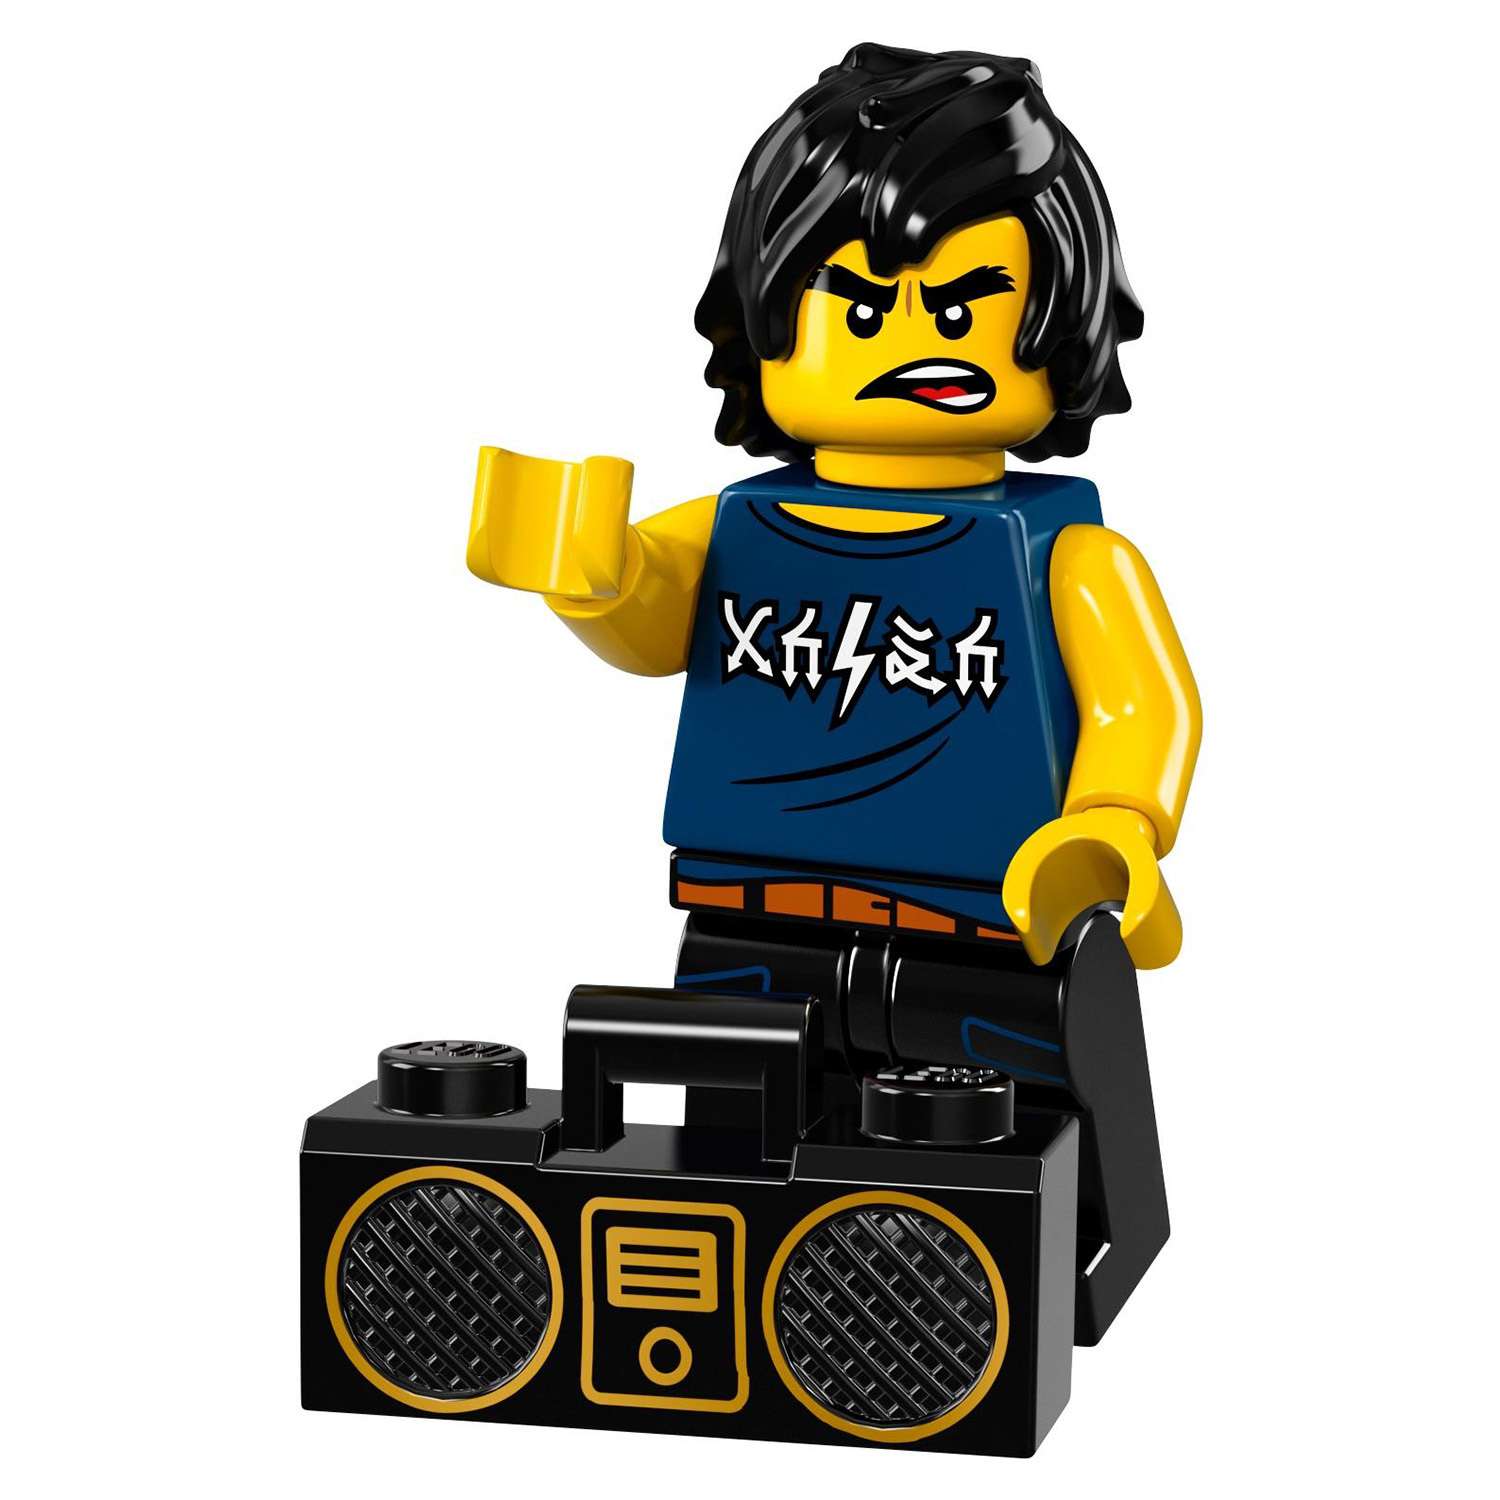 Конструктор LEGO Minifigures Минифигурки ФИЛЬМ: НИНДЗЯГО (71019) в ассортименте - фото 35